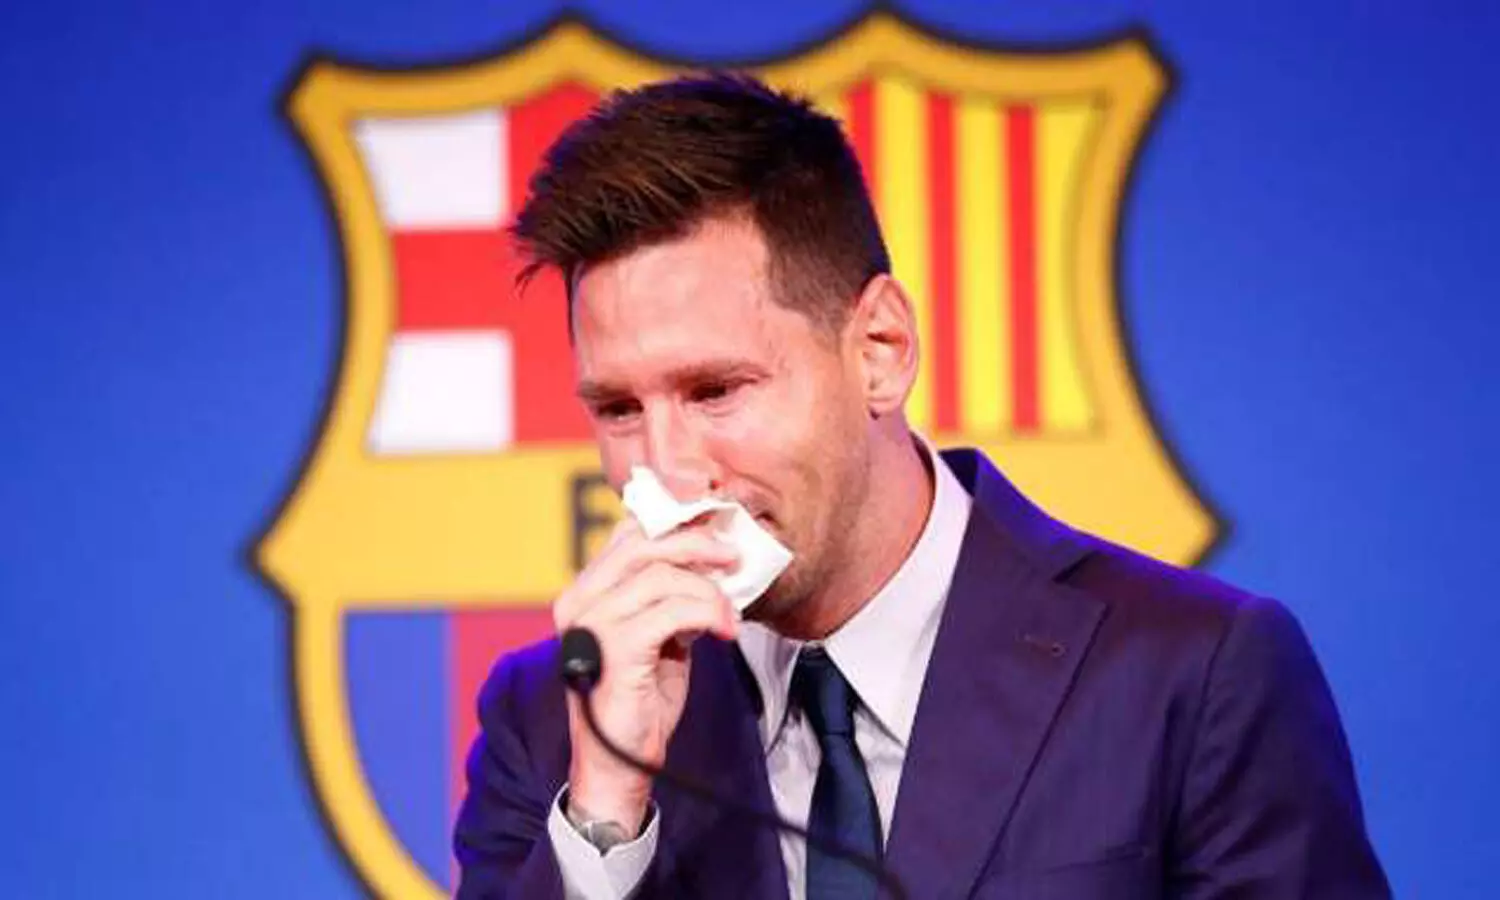 Lionel Messi breaks down in tears